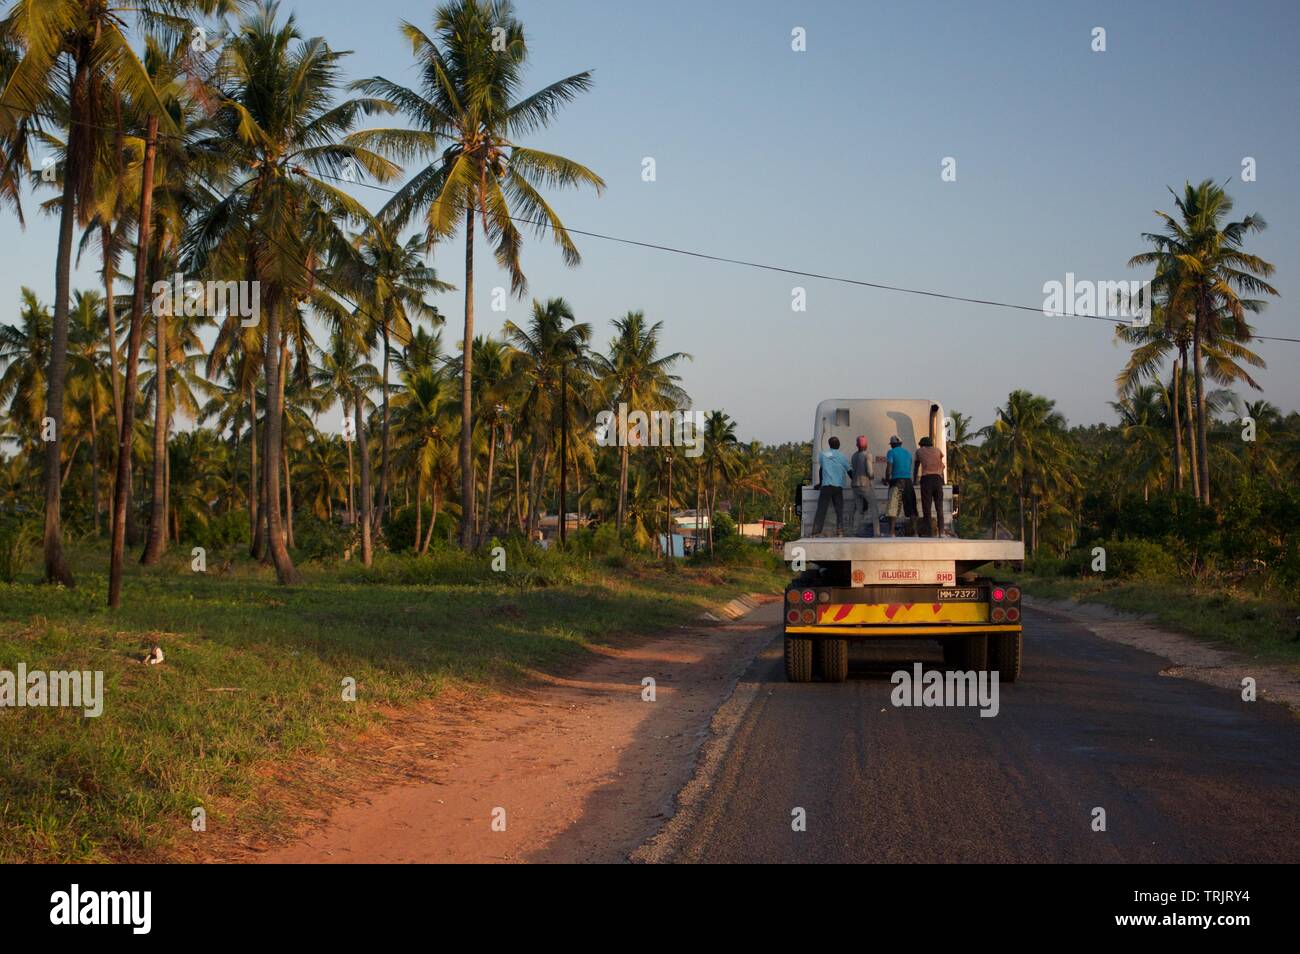 Équitation fusil de chasse sur un camion à plateau, Tofo (Mozambique) Banque D'Images